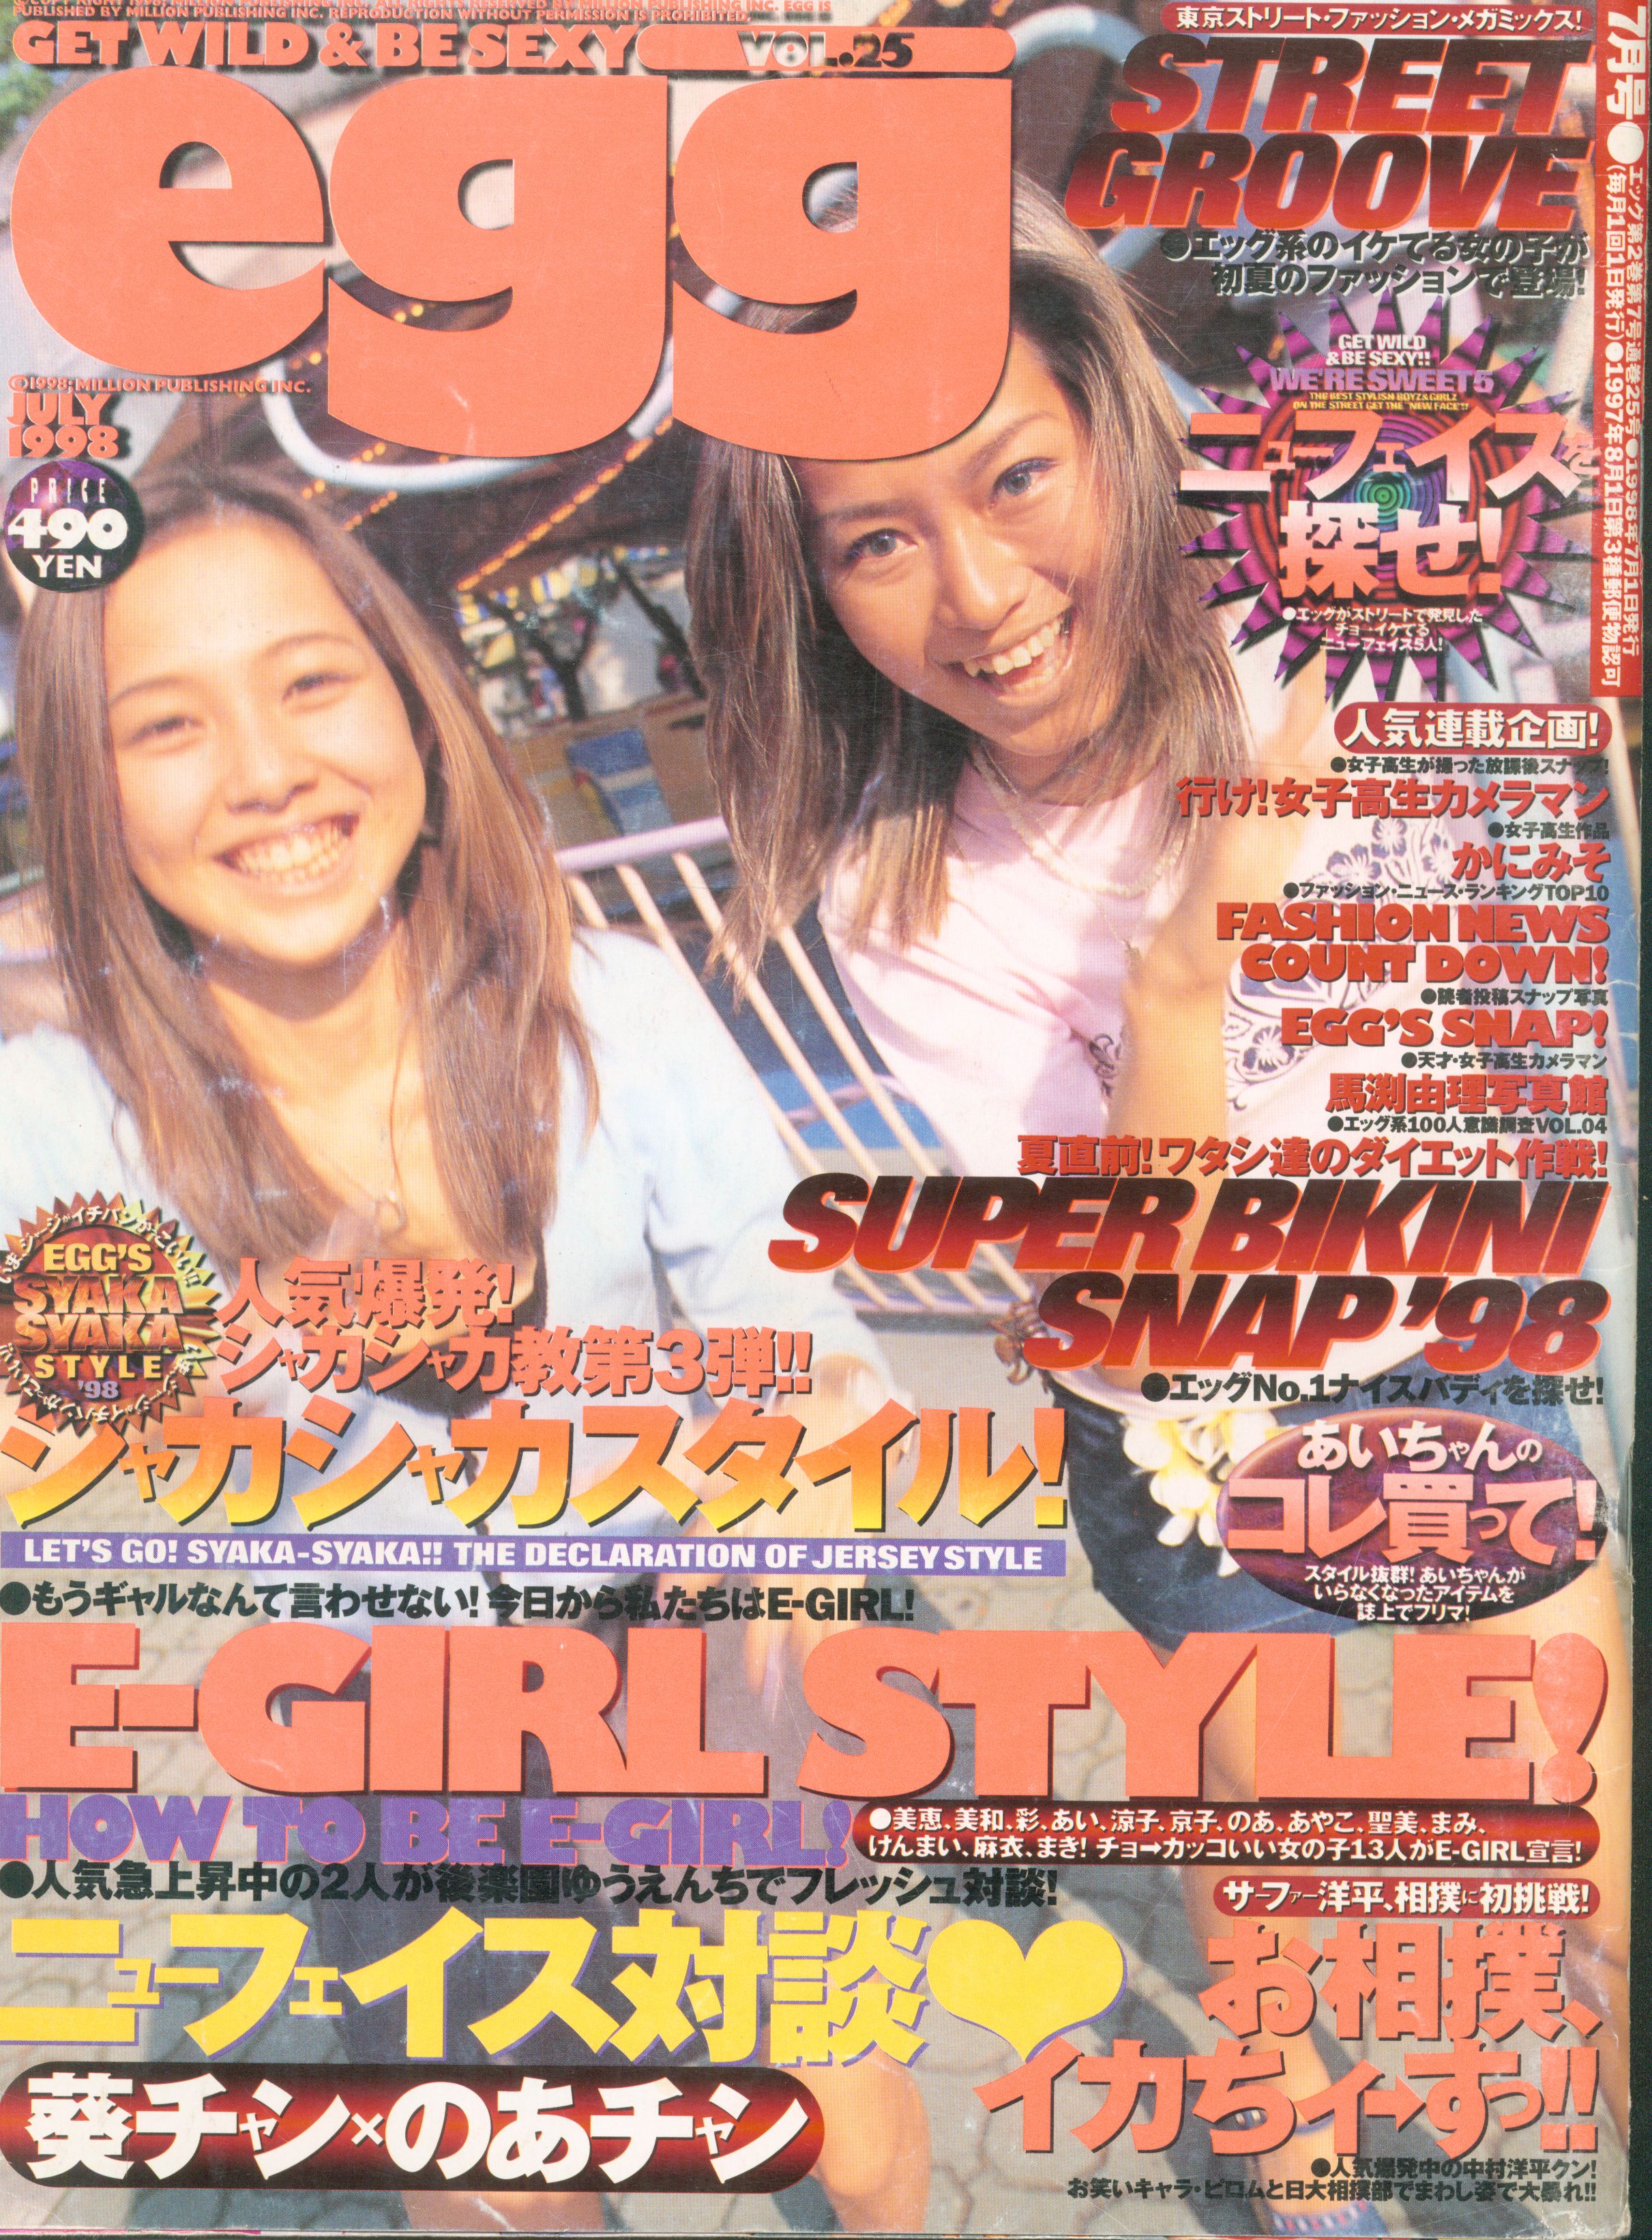 egg 創刊号 1997年 - アート/エンタメ